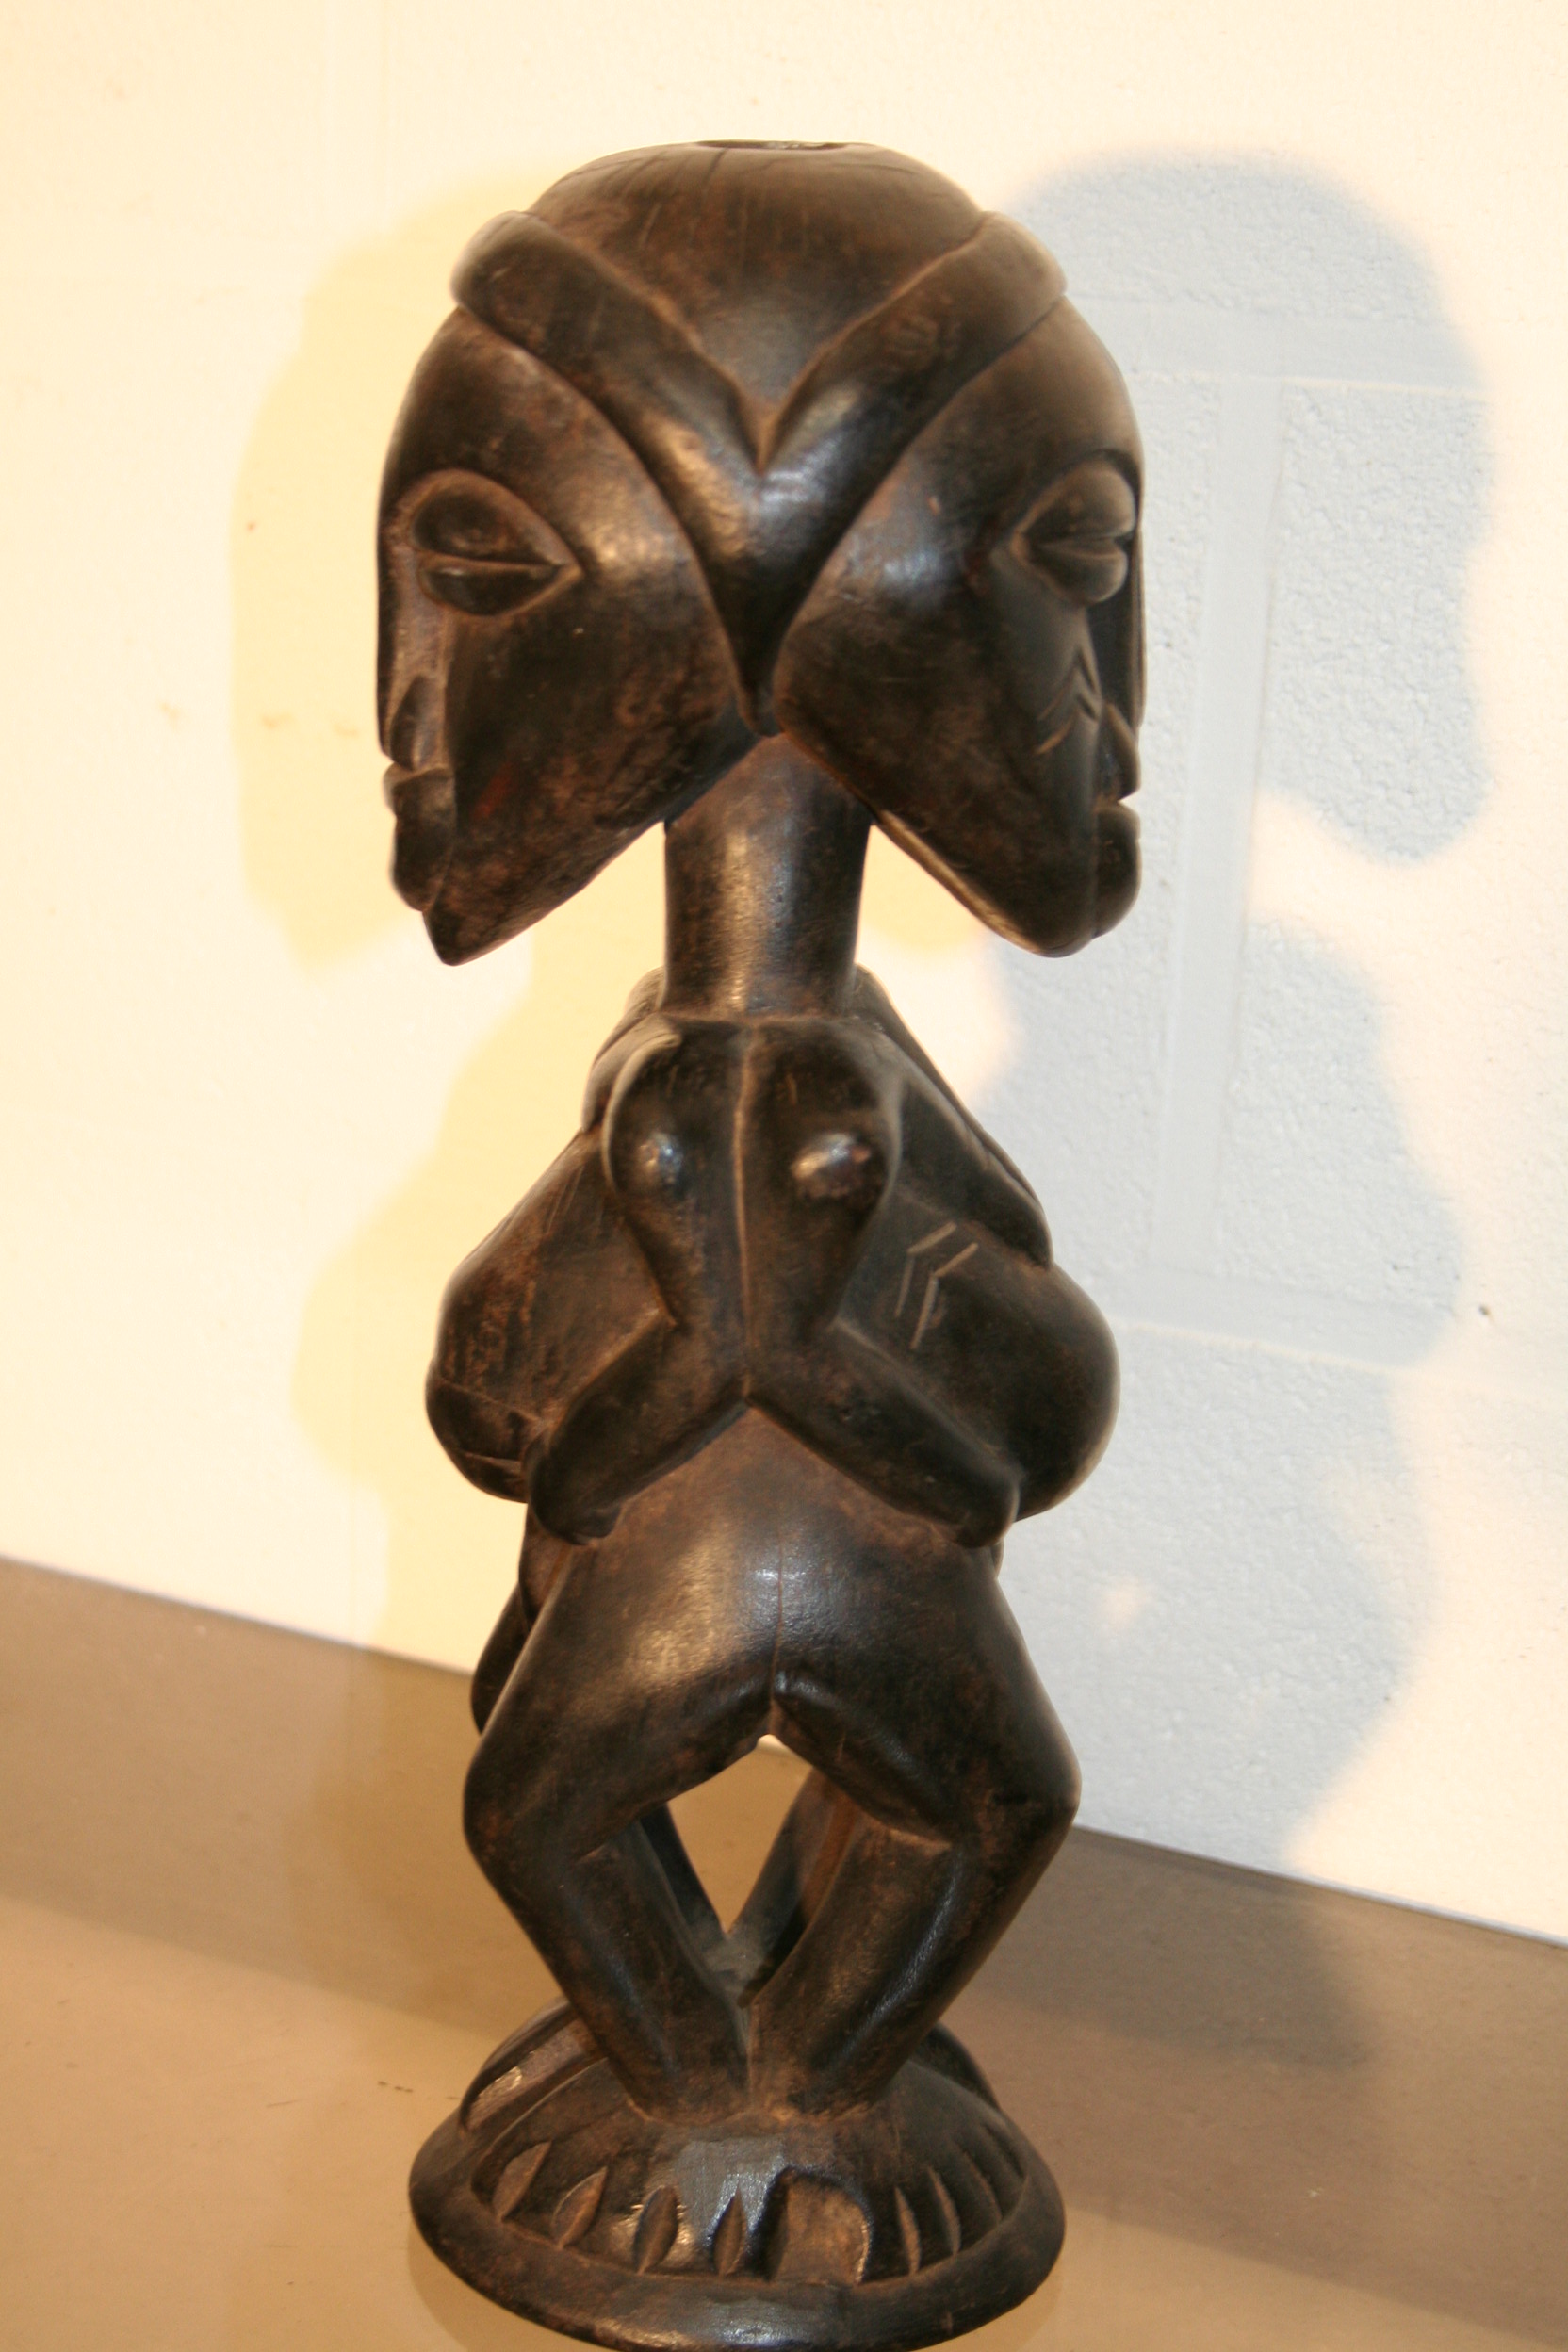 luba(janus), d`afrique : R.d.du Congo, statuette luba(janus), masque ancien africain luba(janus), art du R.d.du Congo - Art Africain, collection privées Belgique. Statue africaine de la tribu des luba(janus), provenant du R.d.du Congo,  1651::vieille statuette Luba Janus;h.32cm. Un côté femme et un côté homme.1ère moitié du 20eme (.acq.1974 Sand bruxelles)

Oud Luba janus beeld h.32cm.Man en vrouw
1ste helft 20ste eeuw.(1974 Sand Brussel). art,culture,masque,statue,statuette,pot,ivoire,exposition,expo,masque original,masques,statues,statuettes,pots,expositions,expo,masques originaux,collectionneur d`art,art africain,culture africaine,masque africain,statue africaine,statuette africaine,pot africain,ivoire africain,exposition africain,expo africain,masque origina africainl,masques africains,statues africaines,statuettes africaines,pots africains,expositions africaines,expo africaines,masques originaux  africains,collectionneur d`art africain